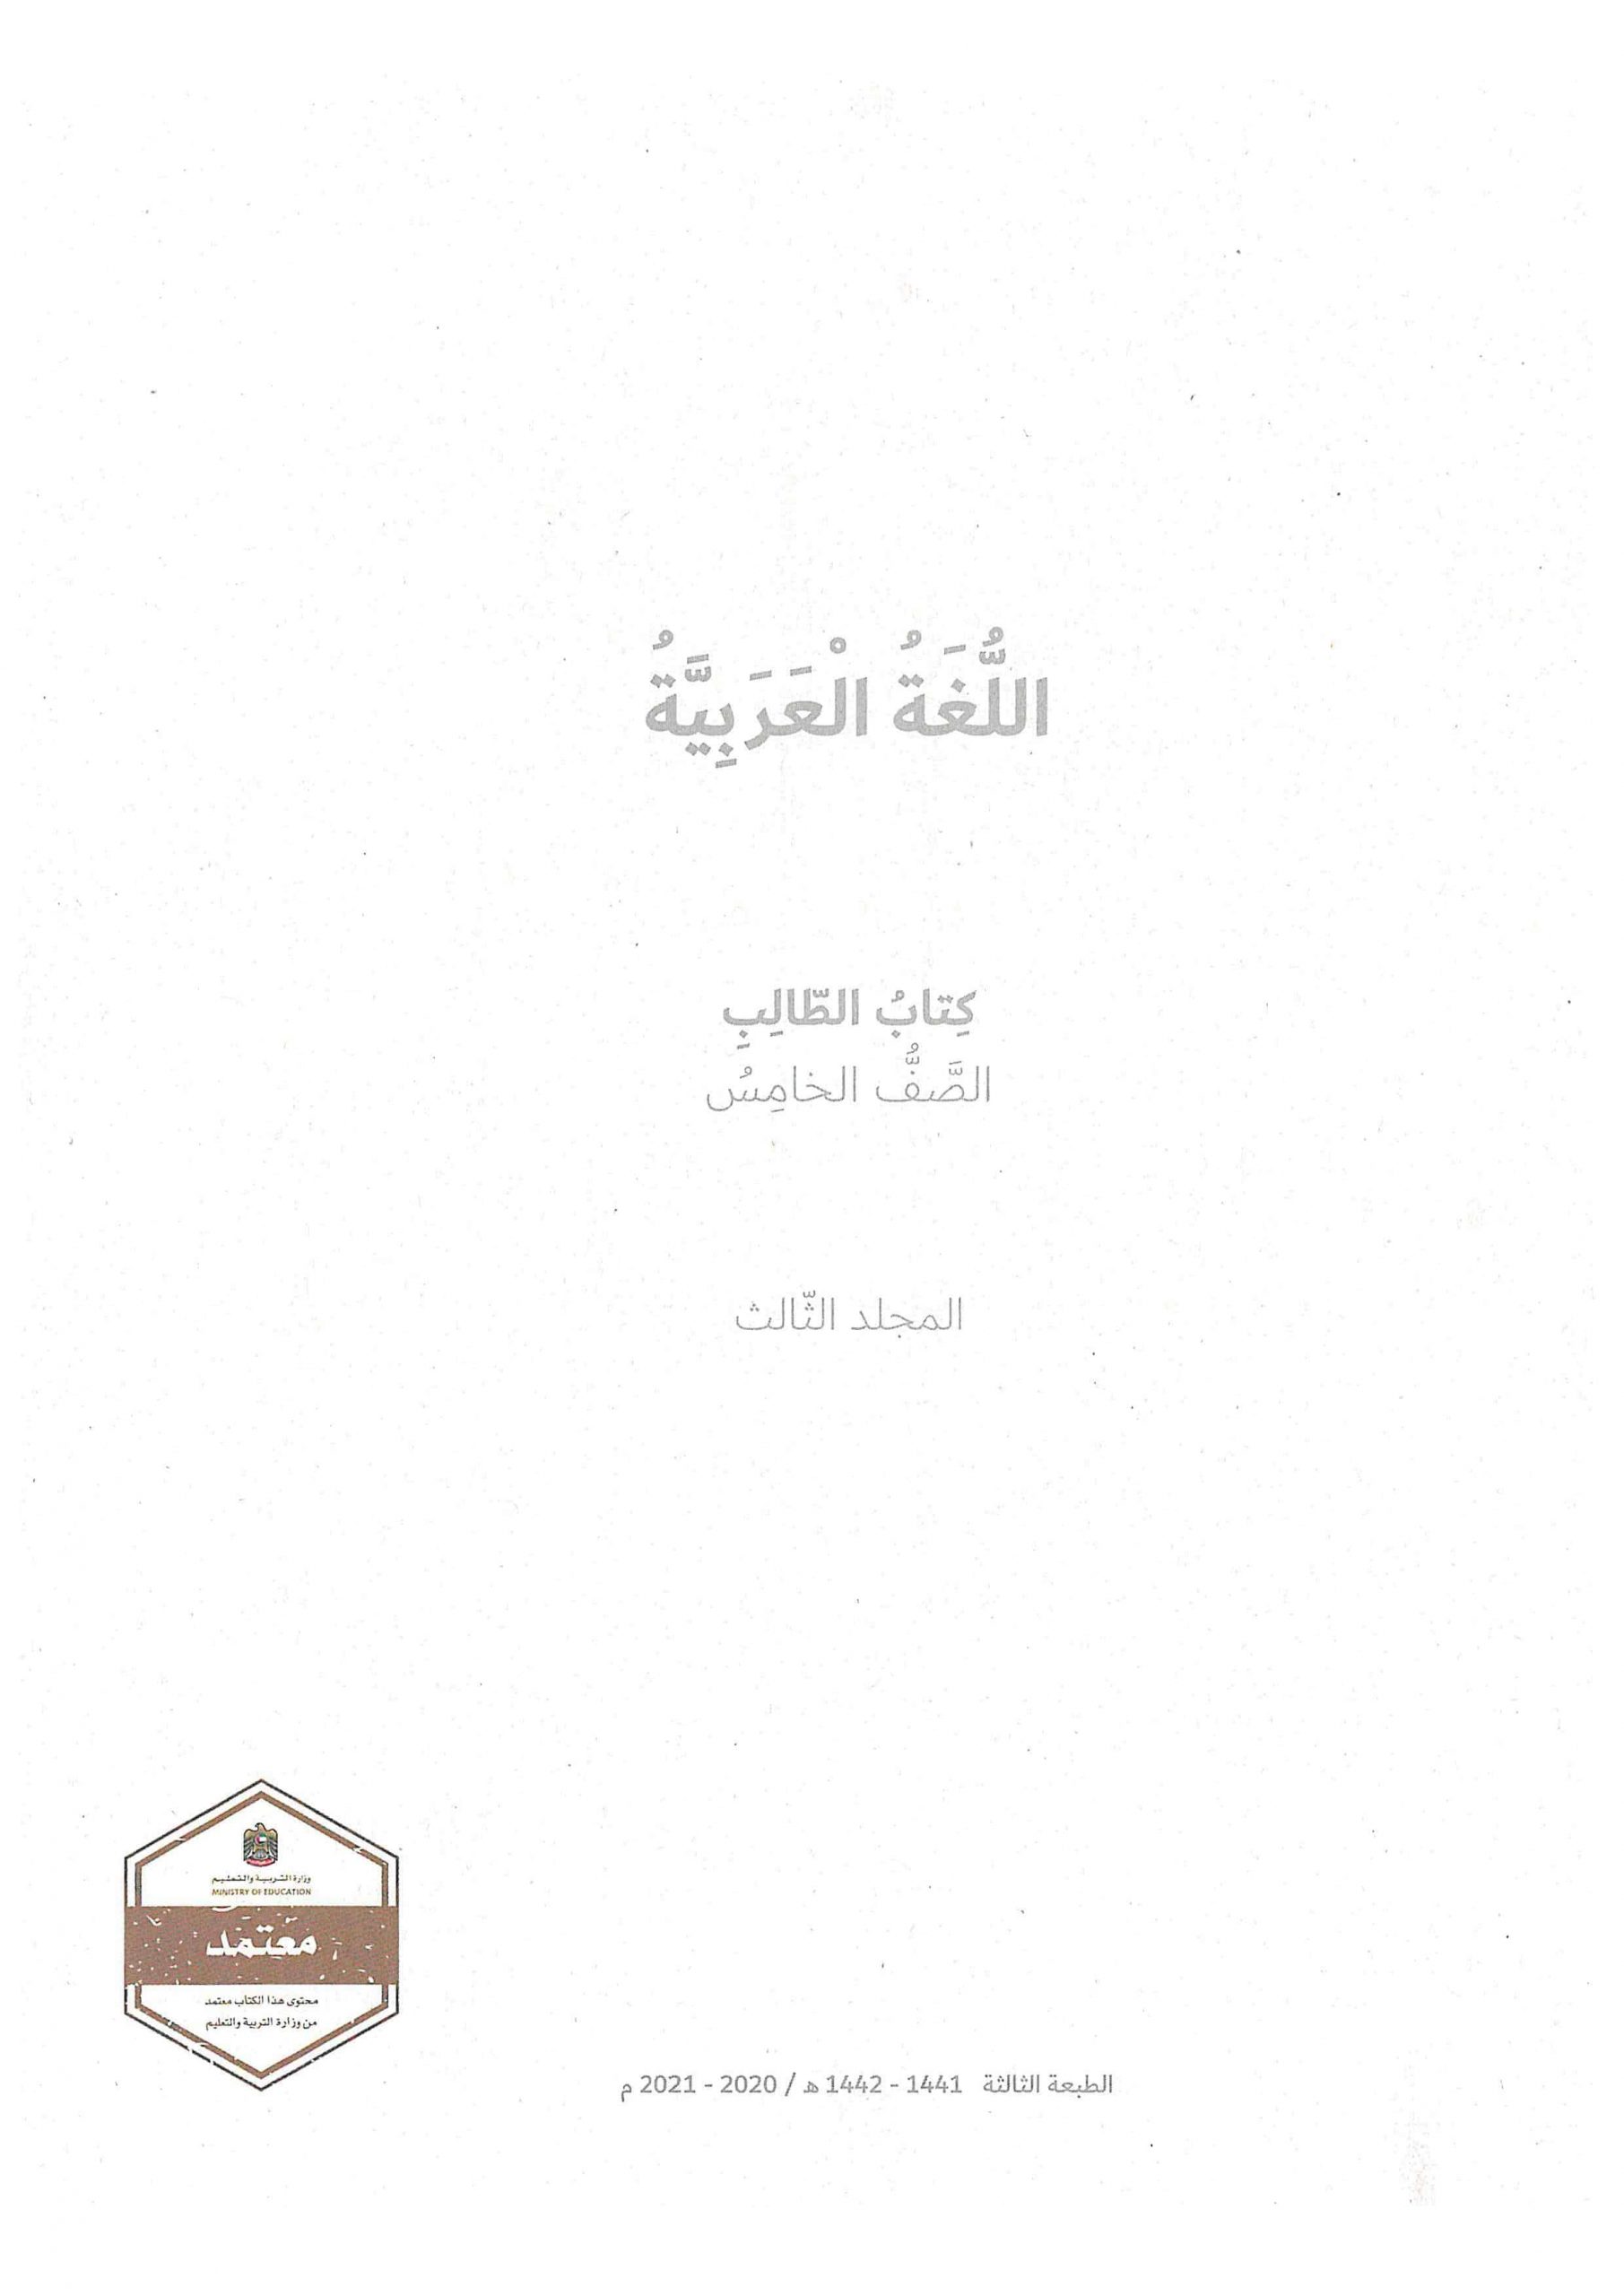 كتاب الطالب الفصل الدراسي الثاني 2020-2021 الصف الخامس مادة اللغة العربية 